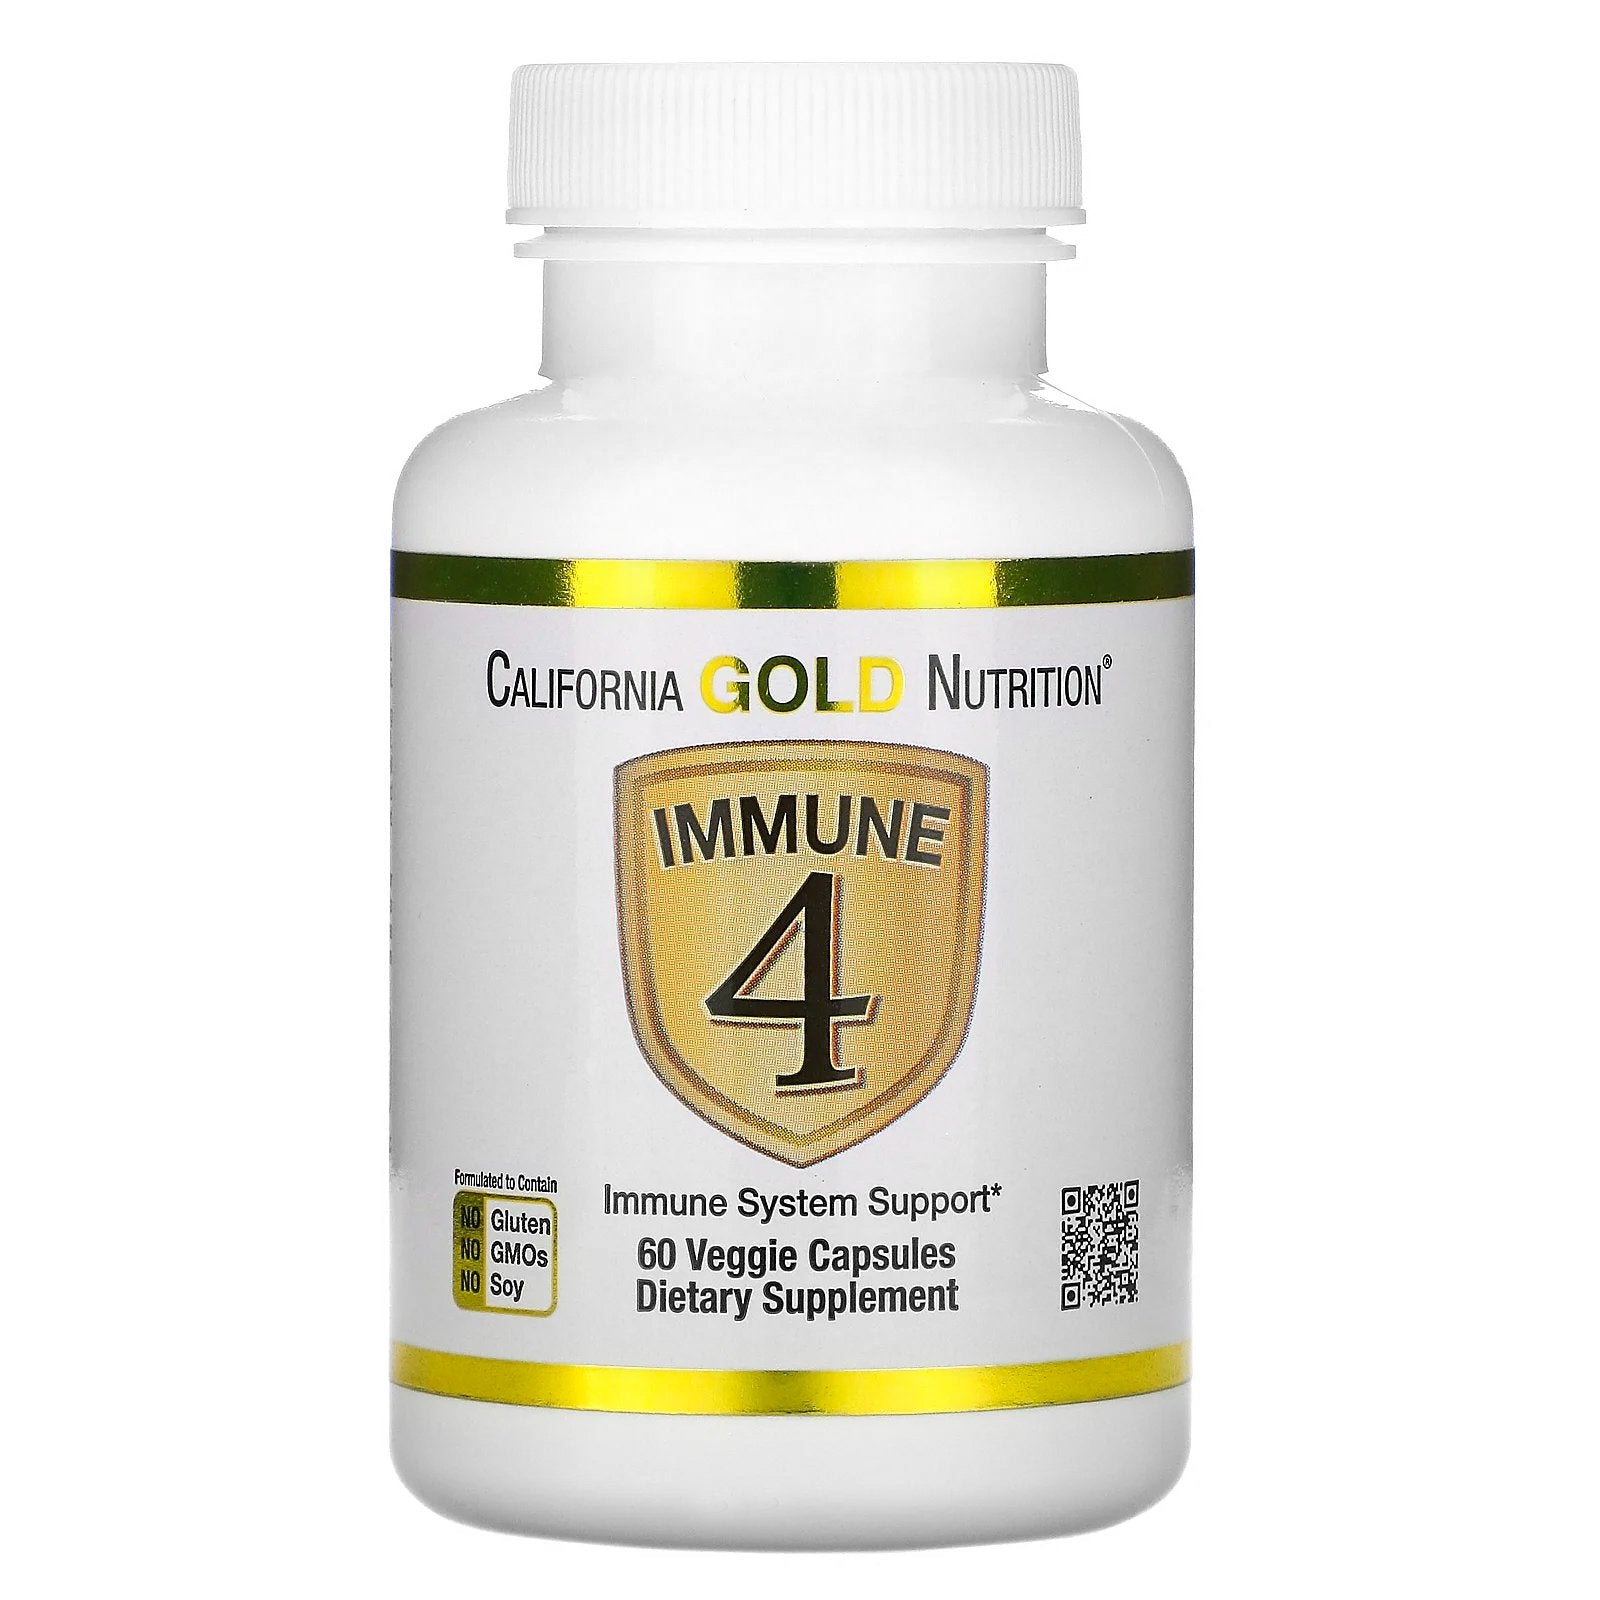 California Gold Nutrition, Immune 4, Immune System Support, 60 Veggie Capsules